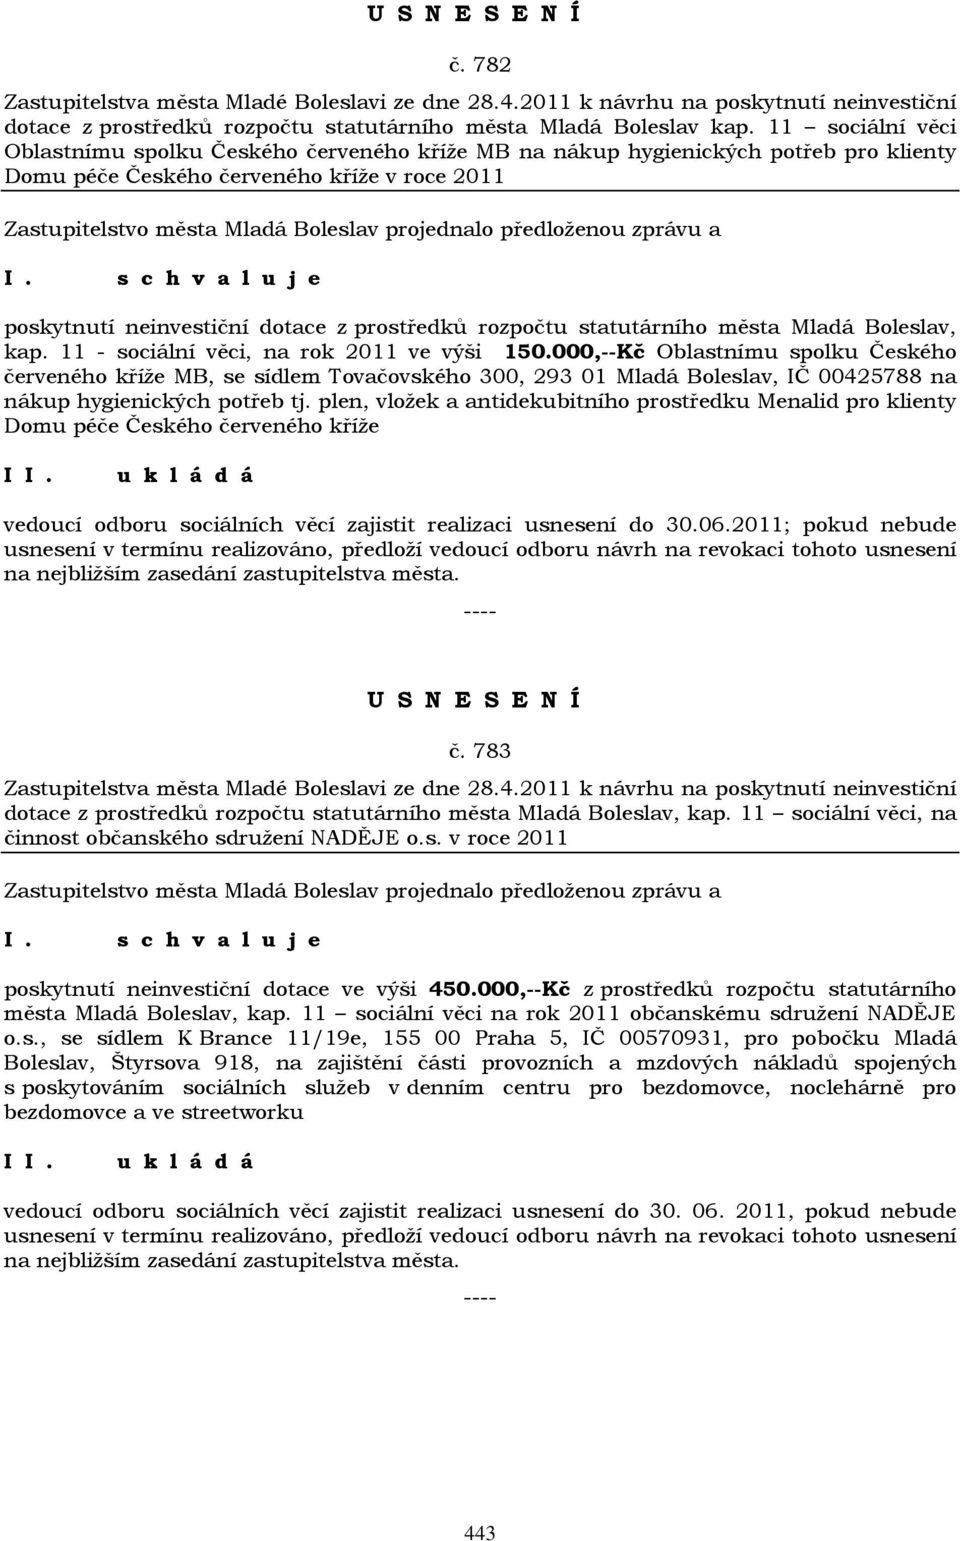 rozpočtu statutárního města Mladá Boleslav, kap. 11 - sociální věci, na rok 2011 ve výši 150.